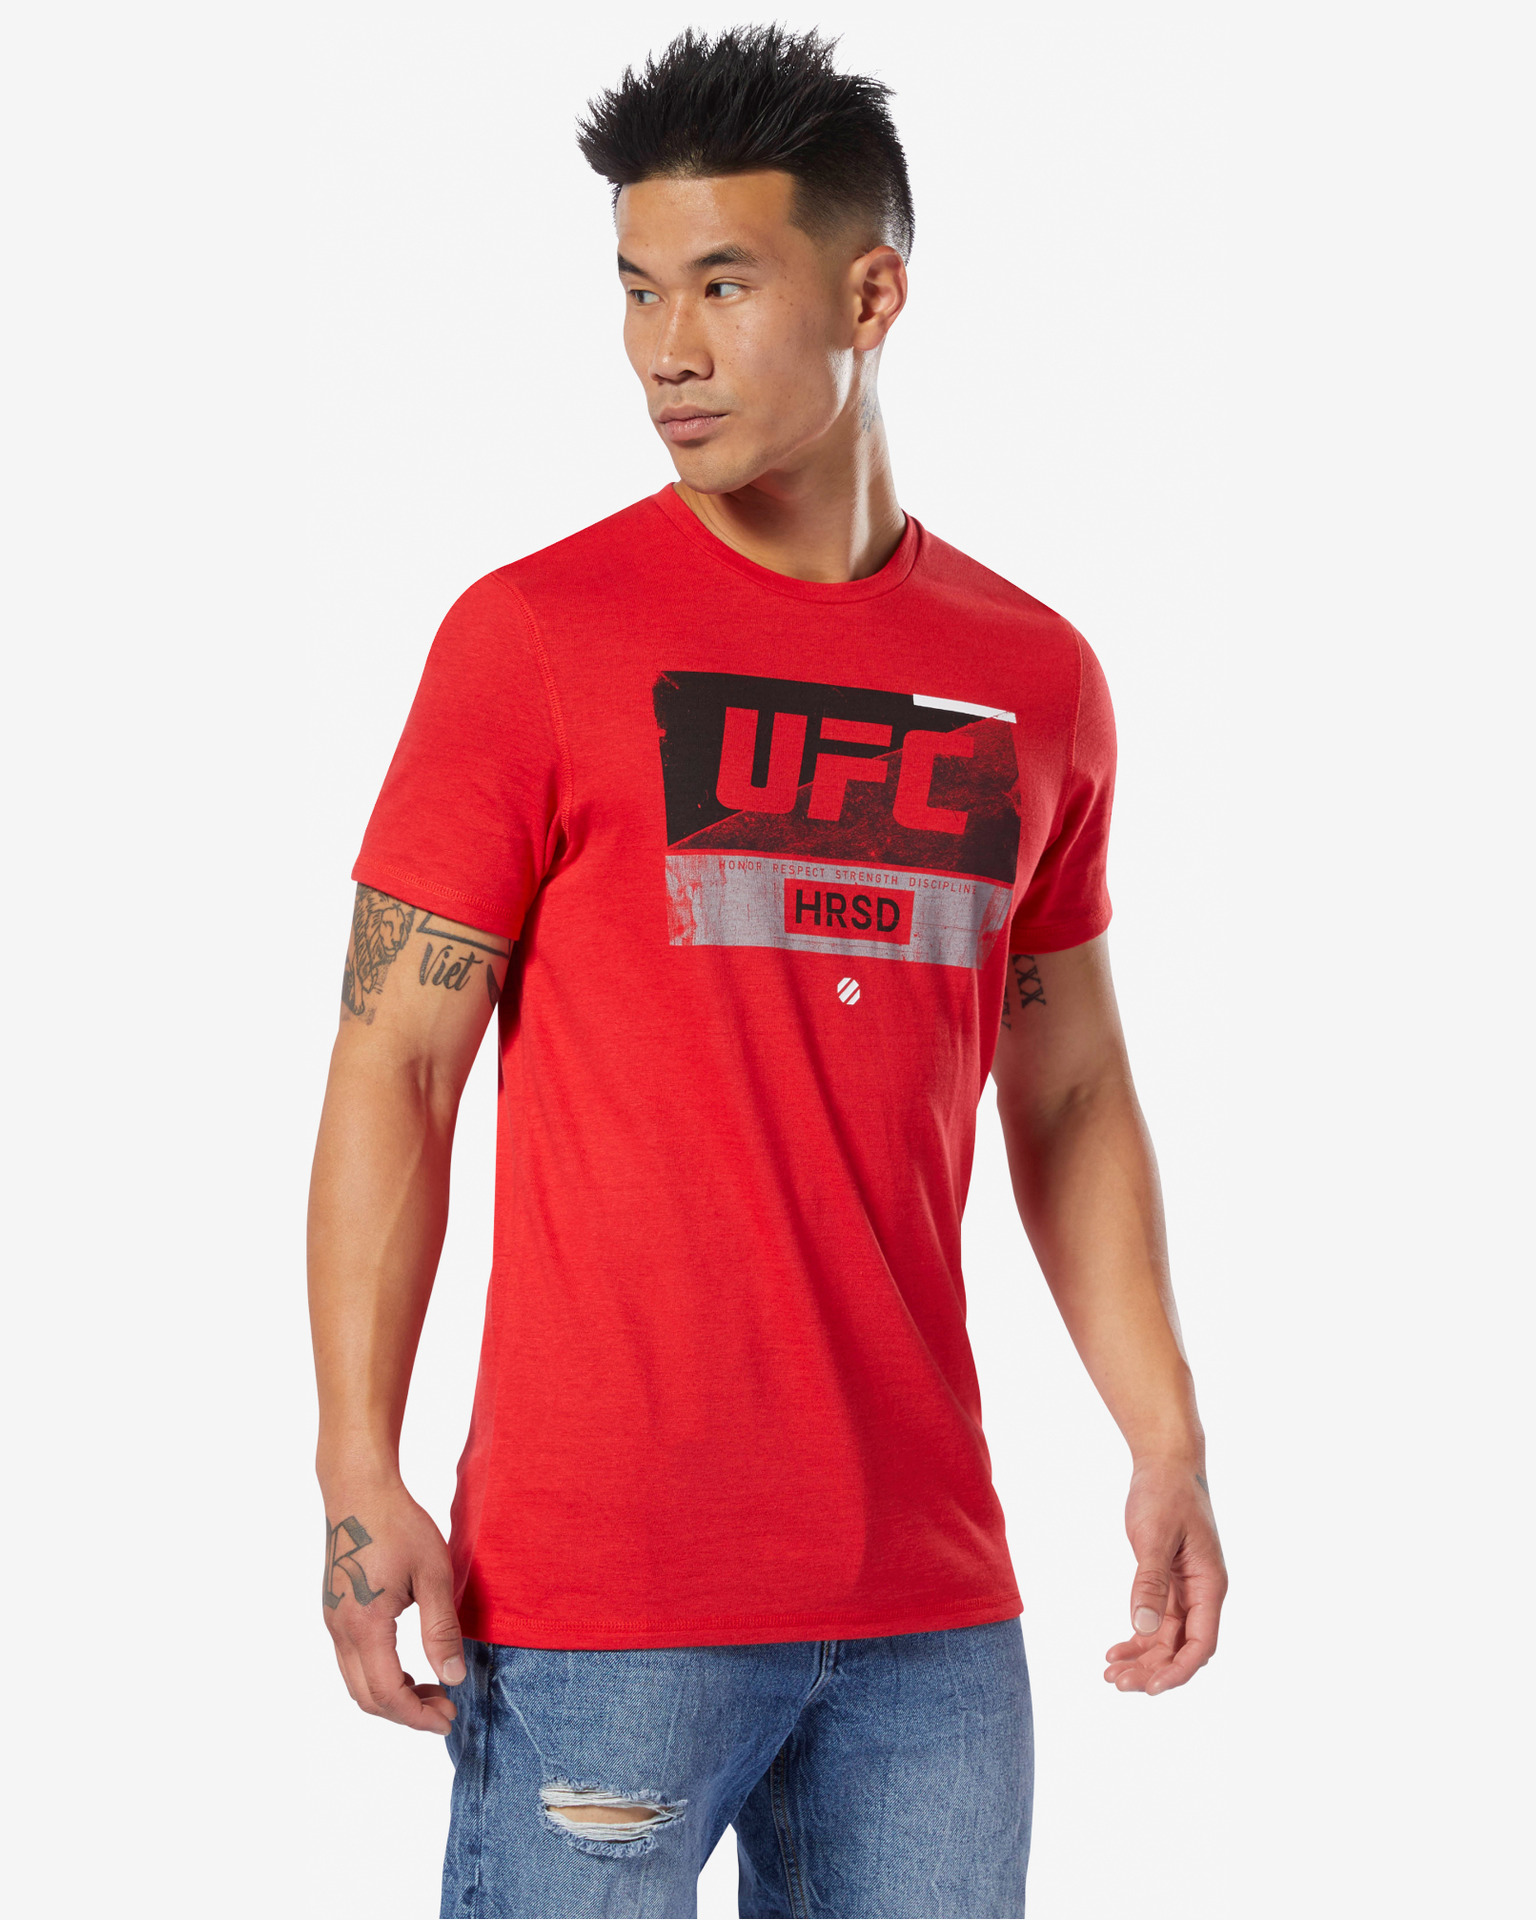 Reebok - UFC Fight T-shirt